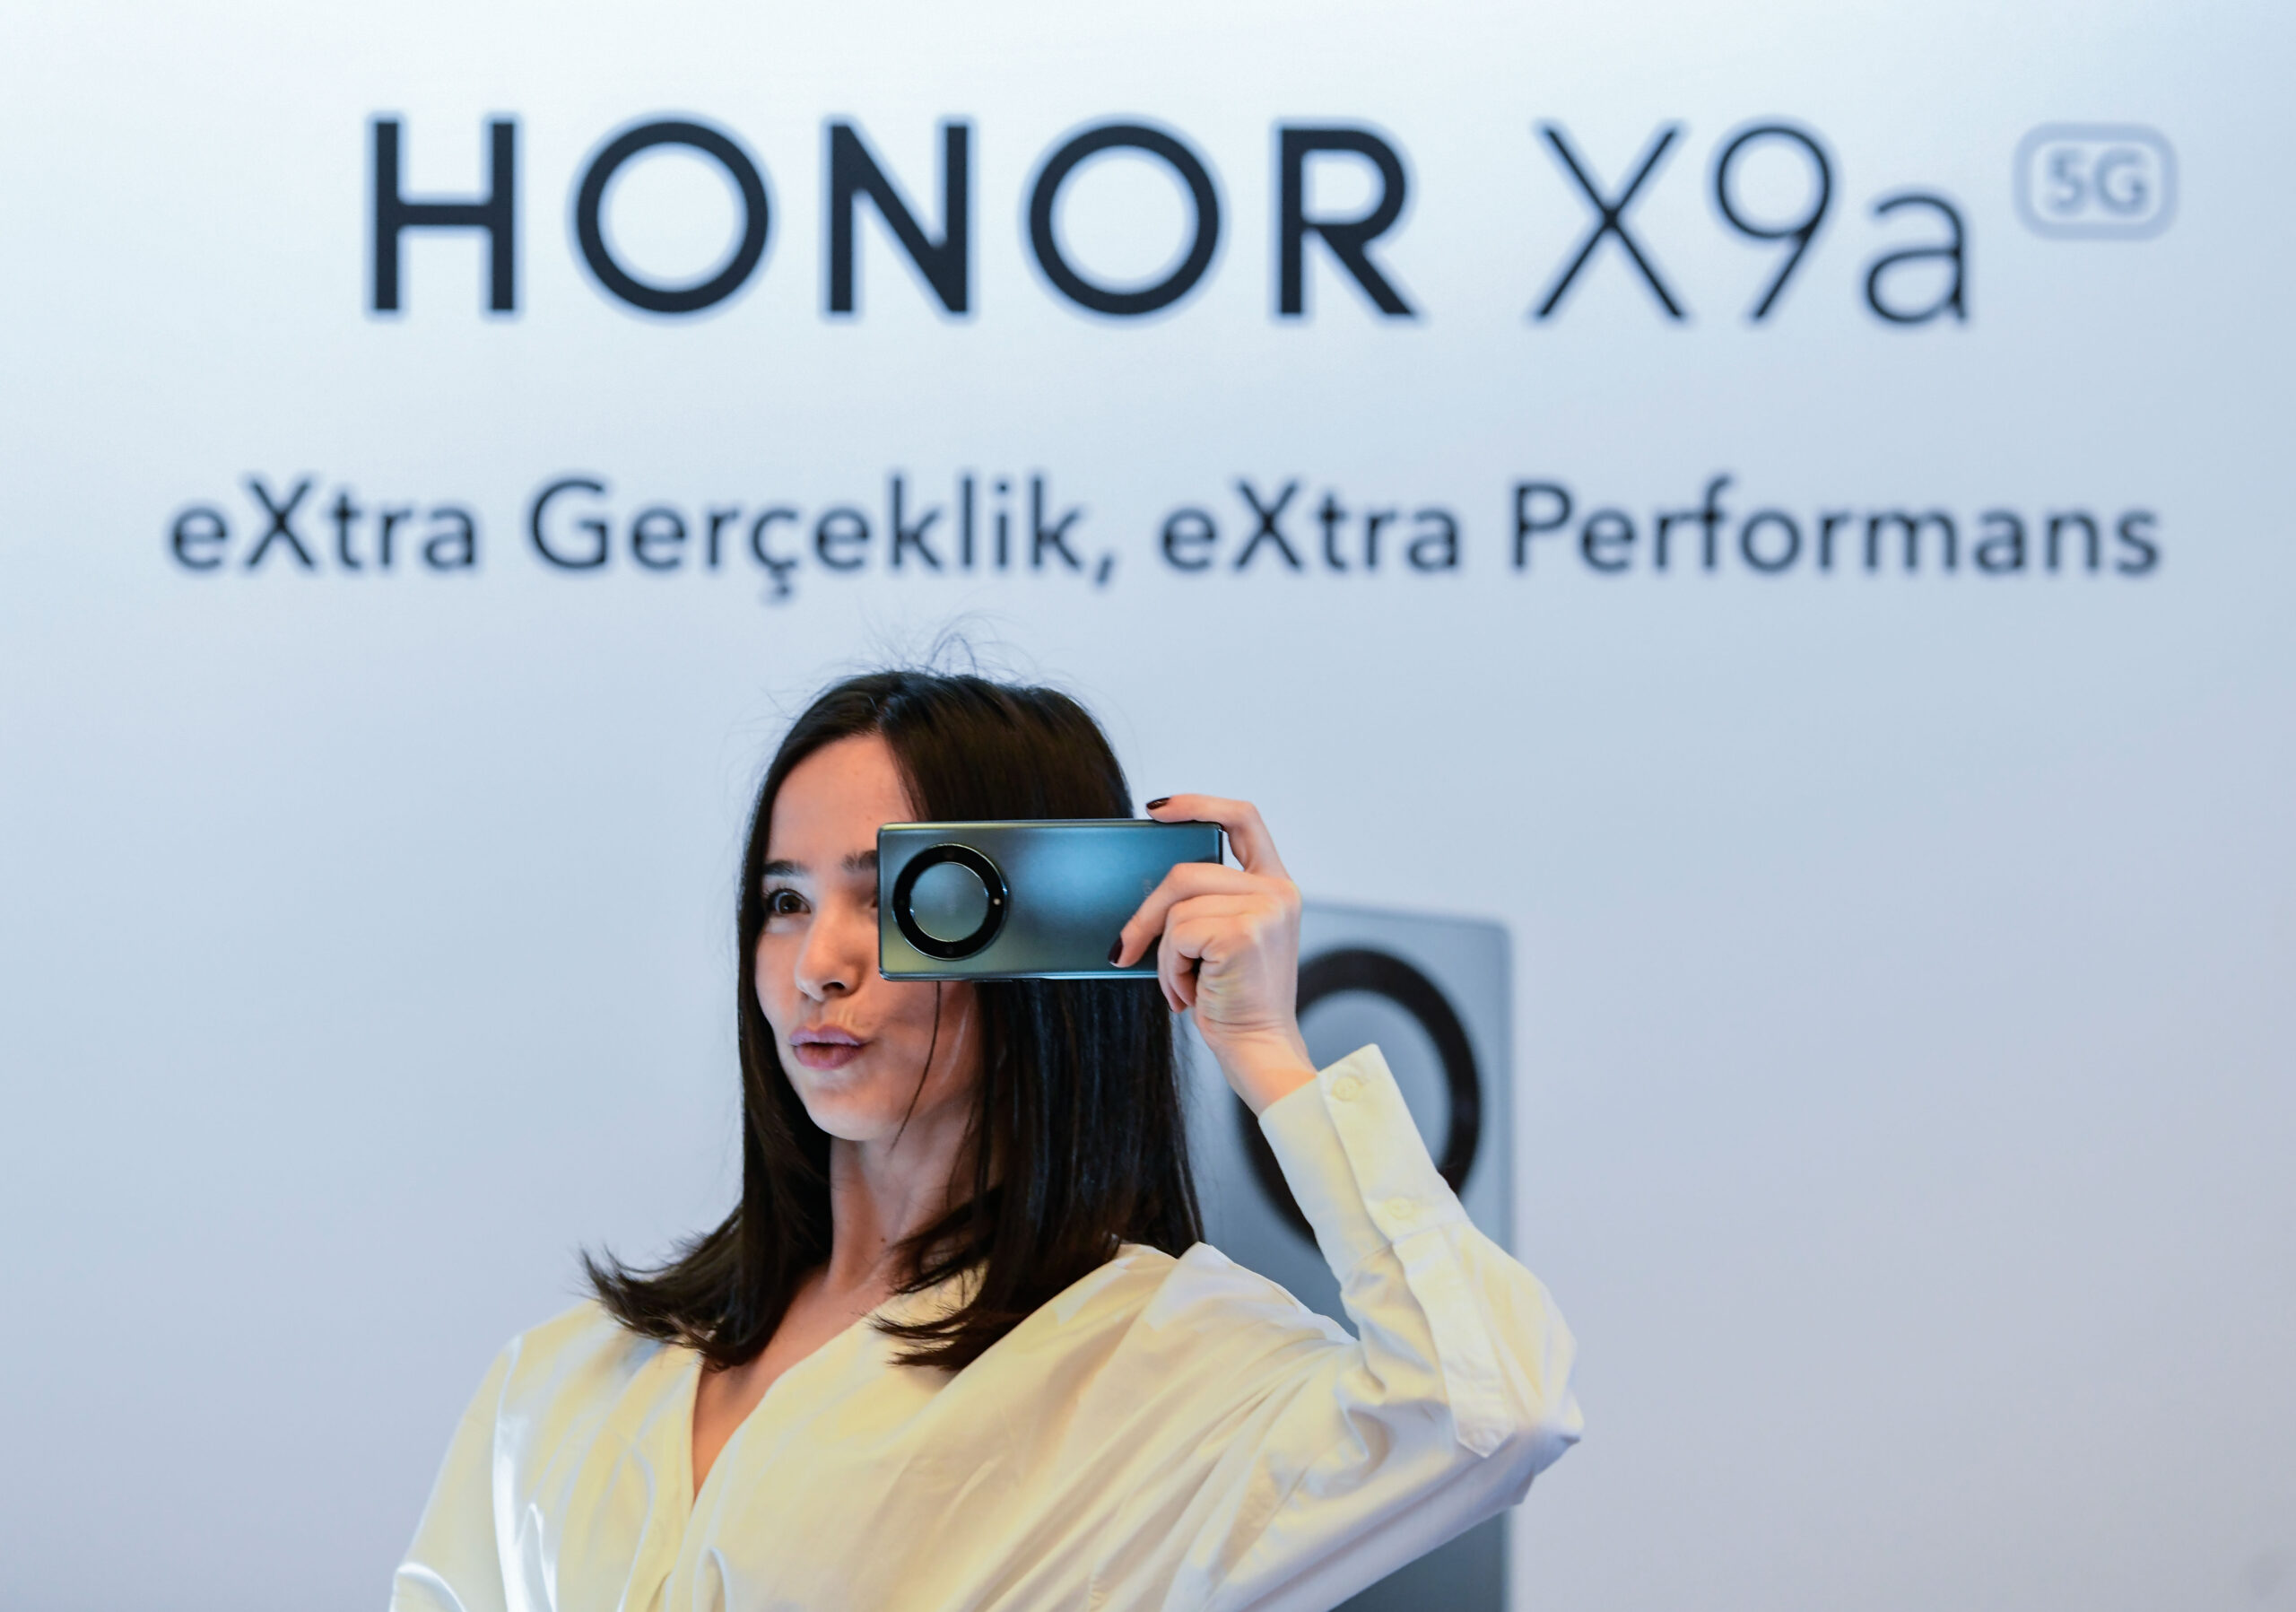 'ออเนอร์' เปิดตัวสมาร์ตโฟนรุ่นใหม่ Honor X9a ในตุรกี